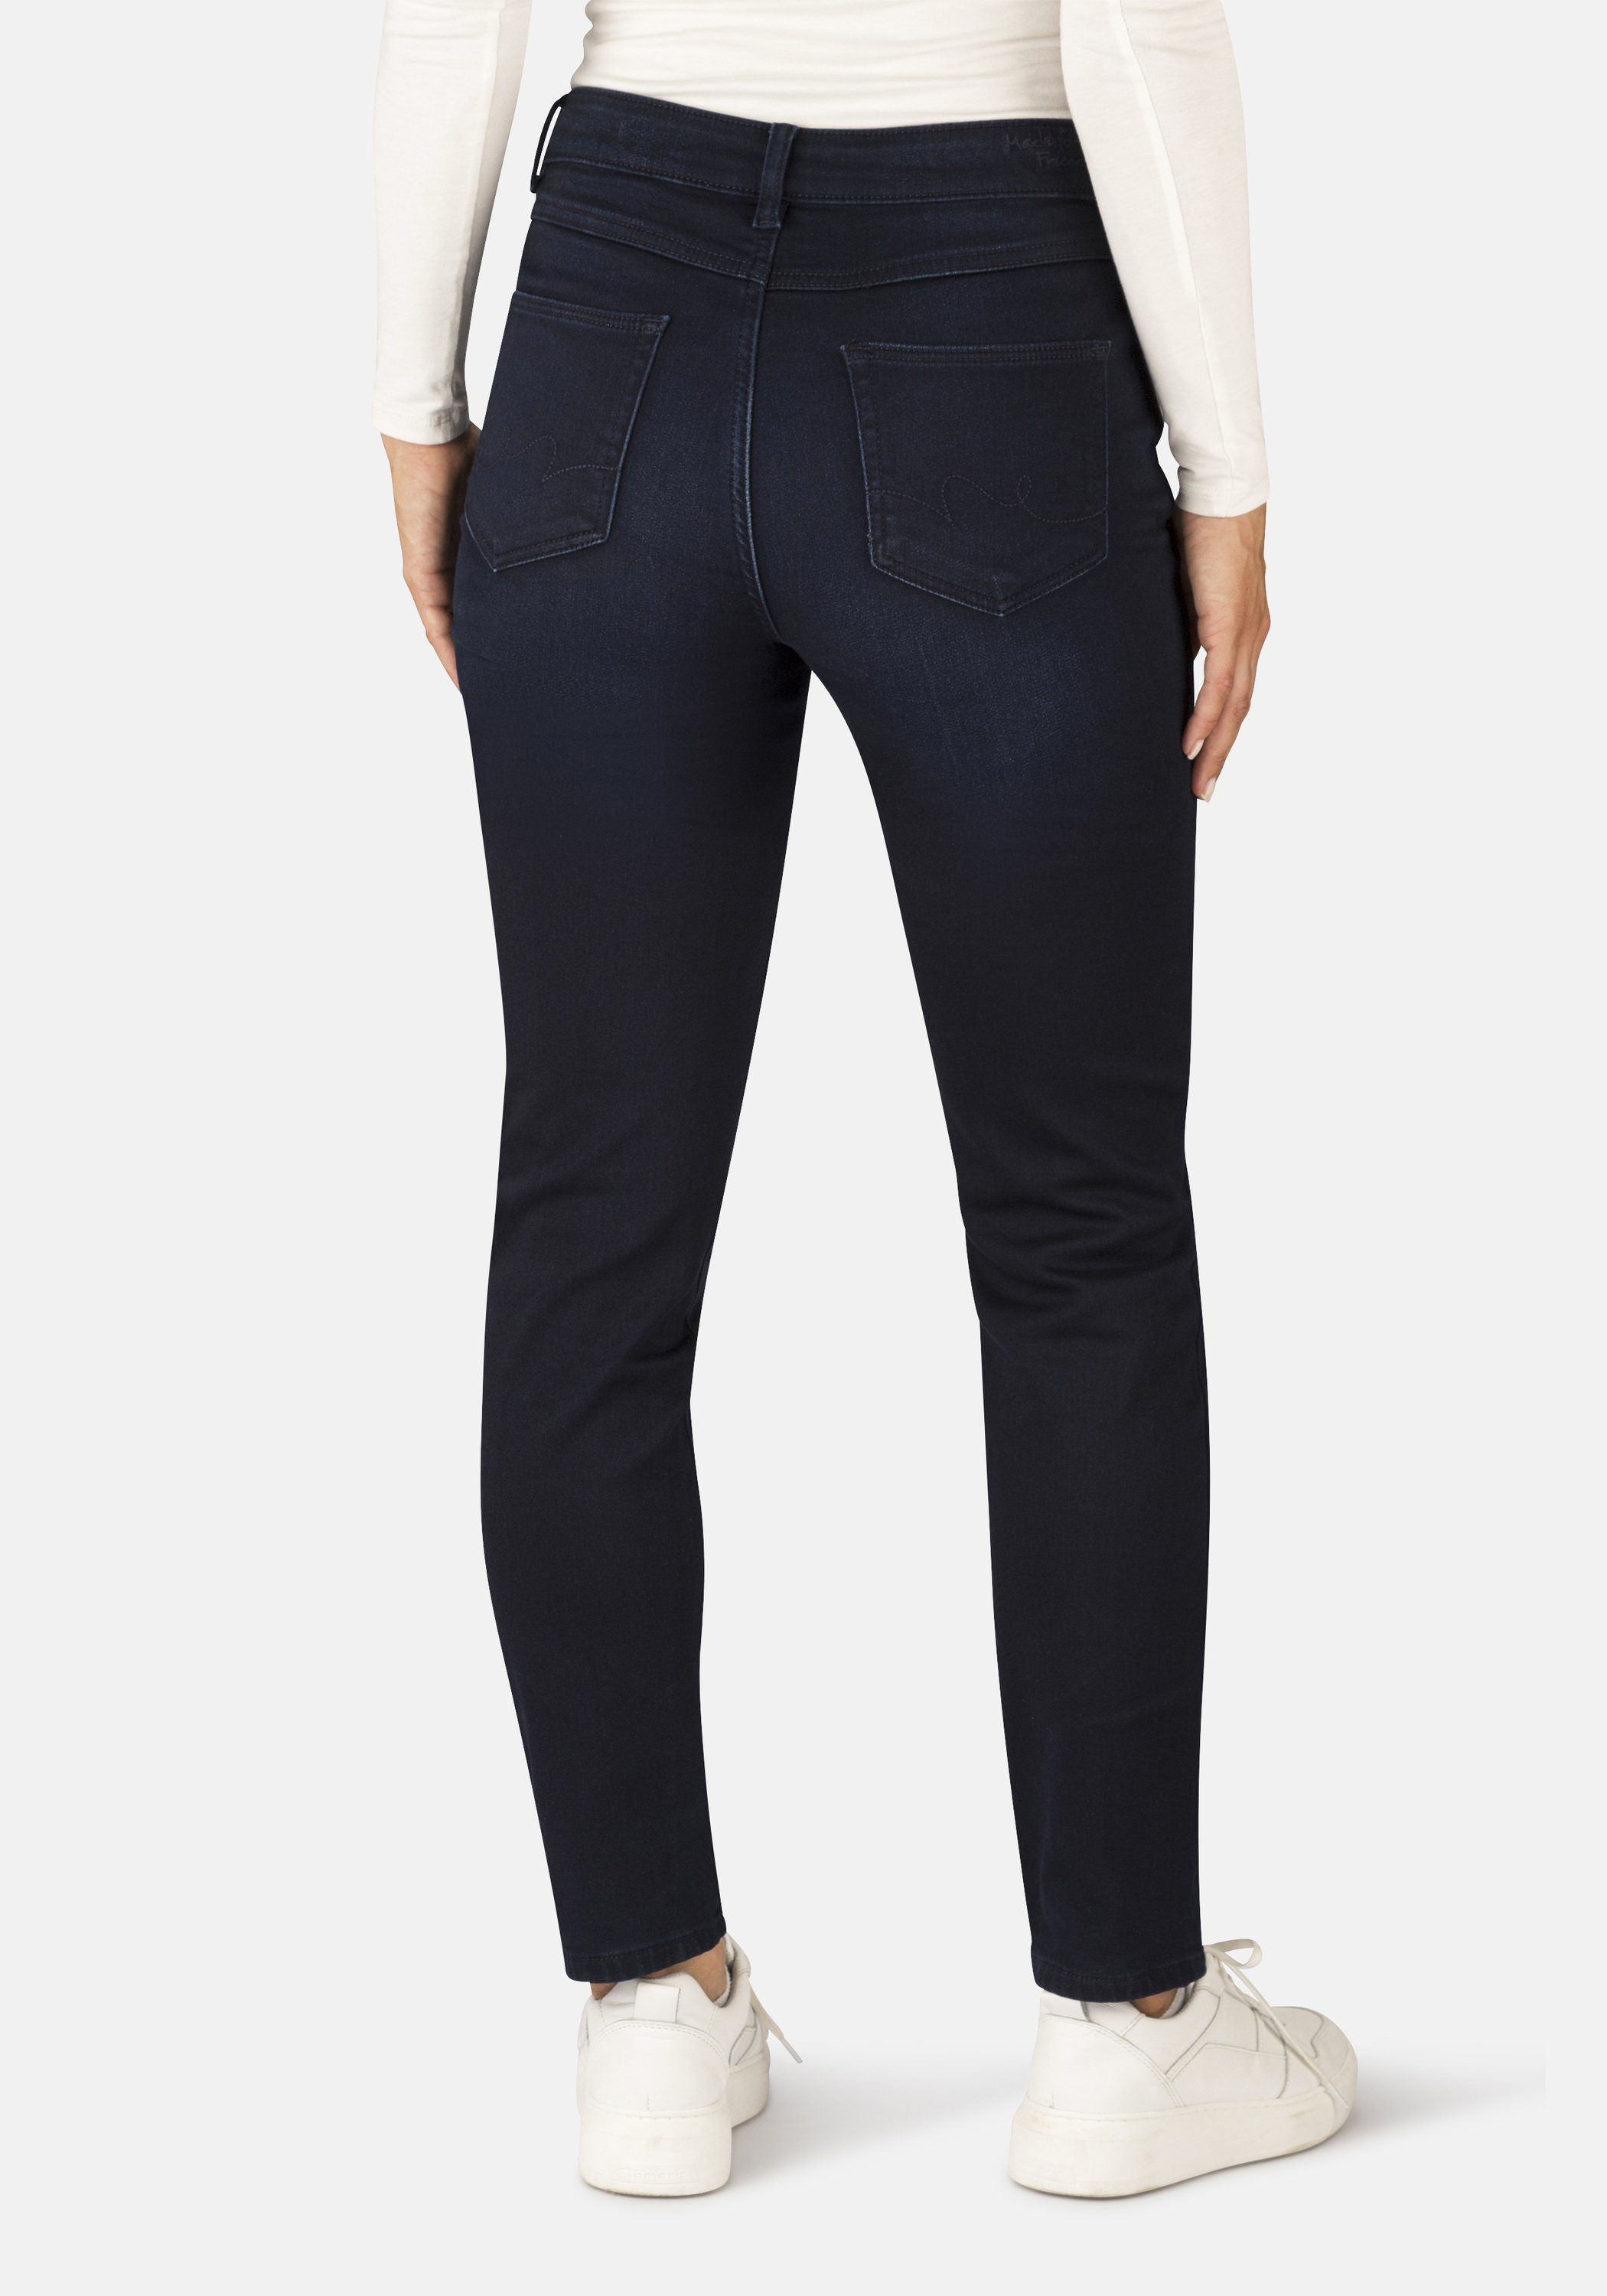 STOOKER WOMEN 5-Pocket-Jeans Straight Fit Zermatt Thermo